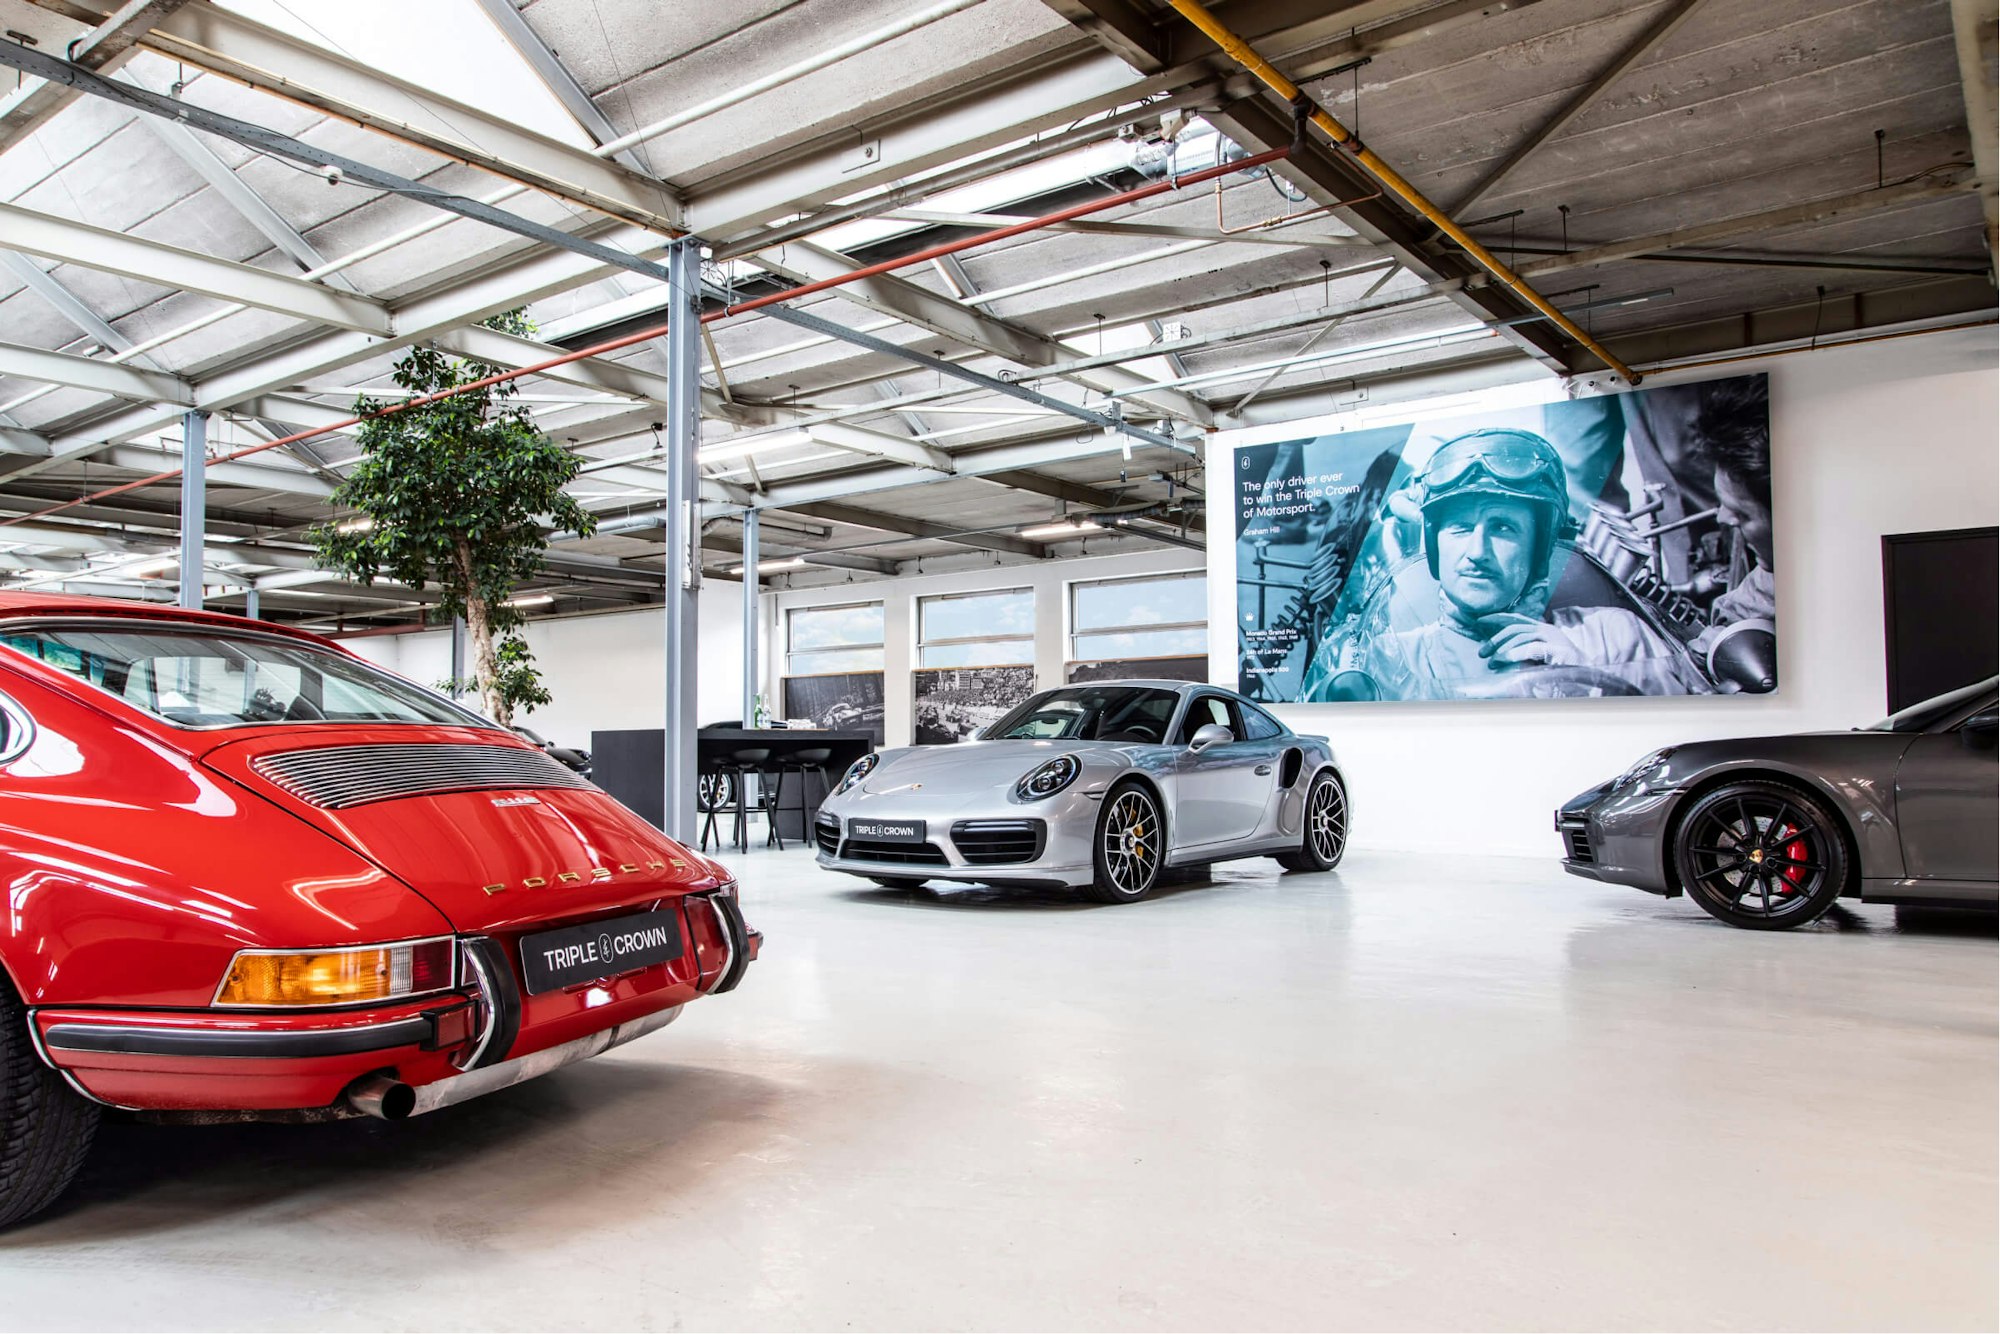 Inside of T.C showroom Triple Crown Stuurmen Porsche in storage branding of shop